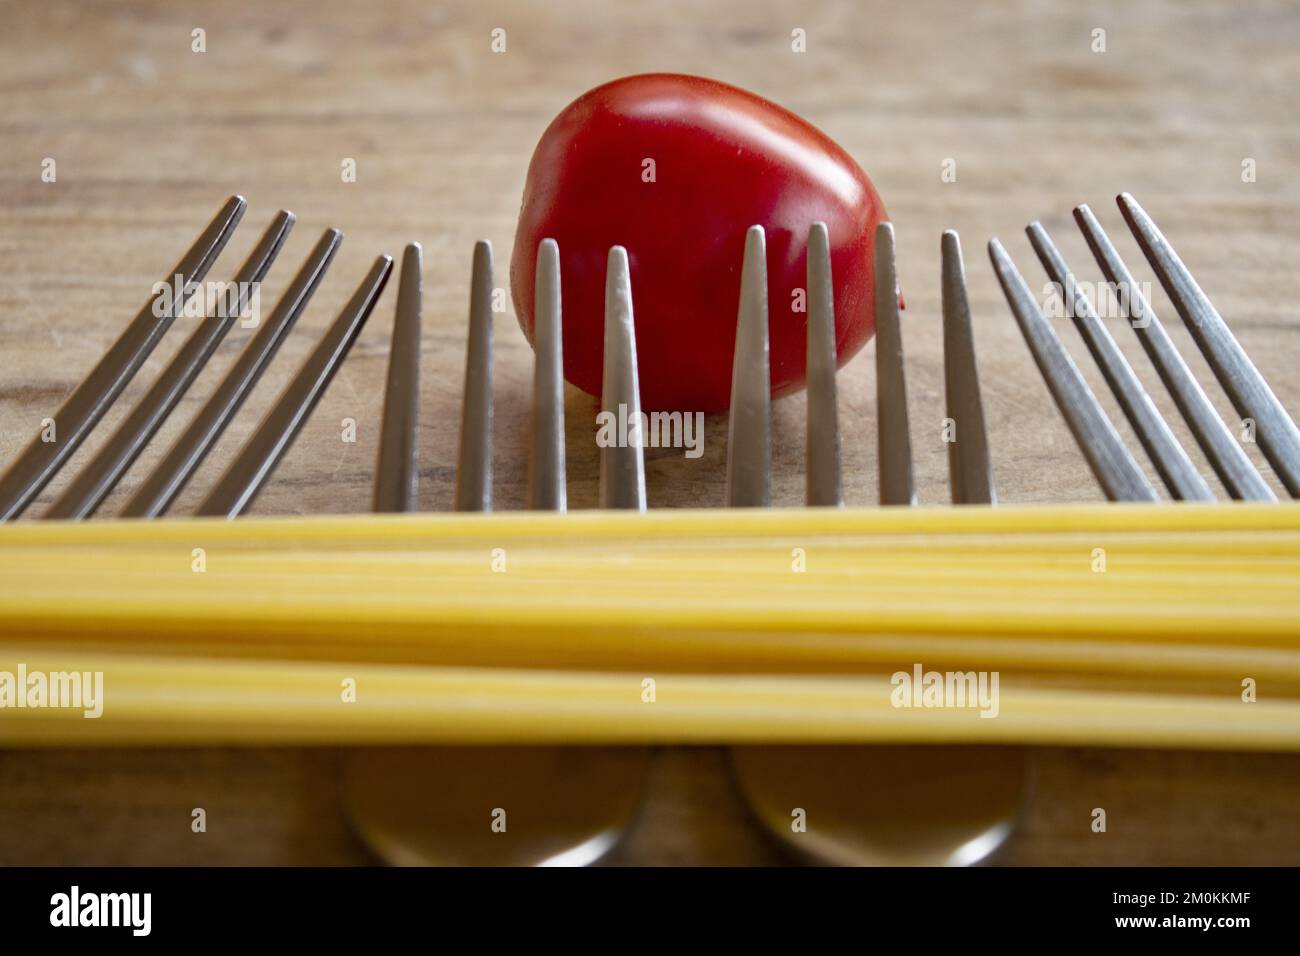 tomato spaghetti seen through four forks Stock Photo